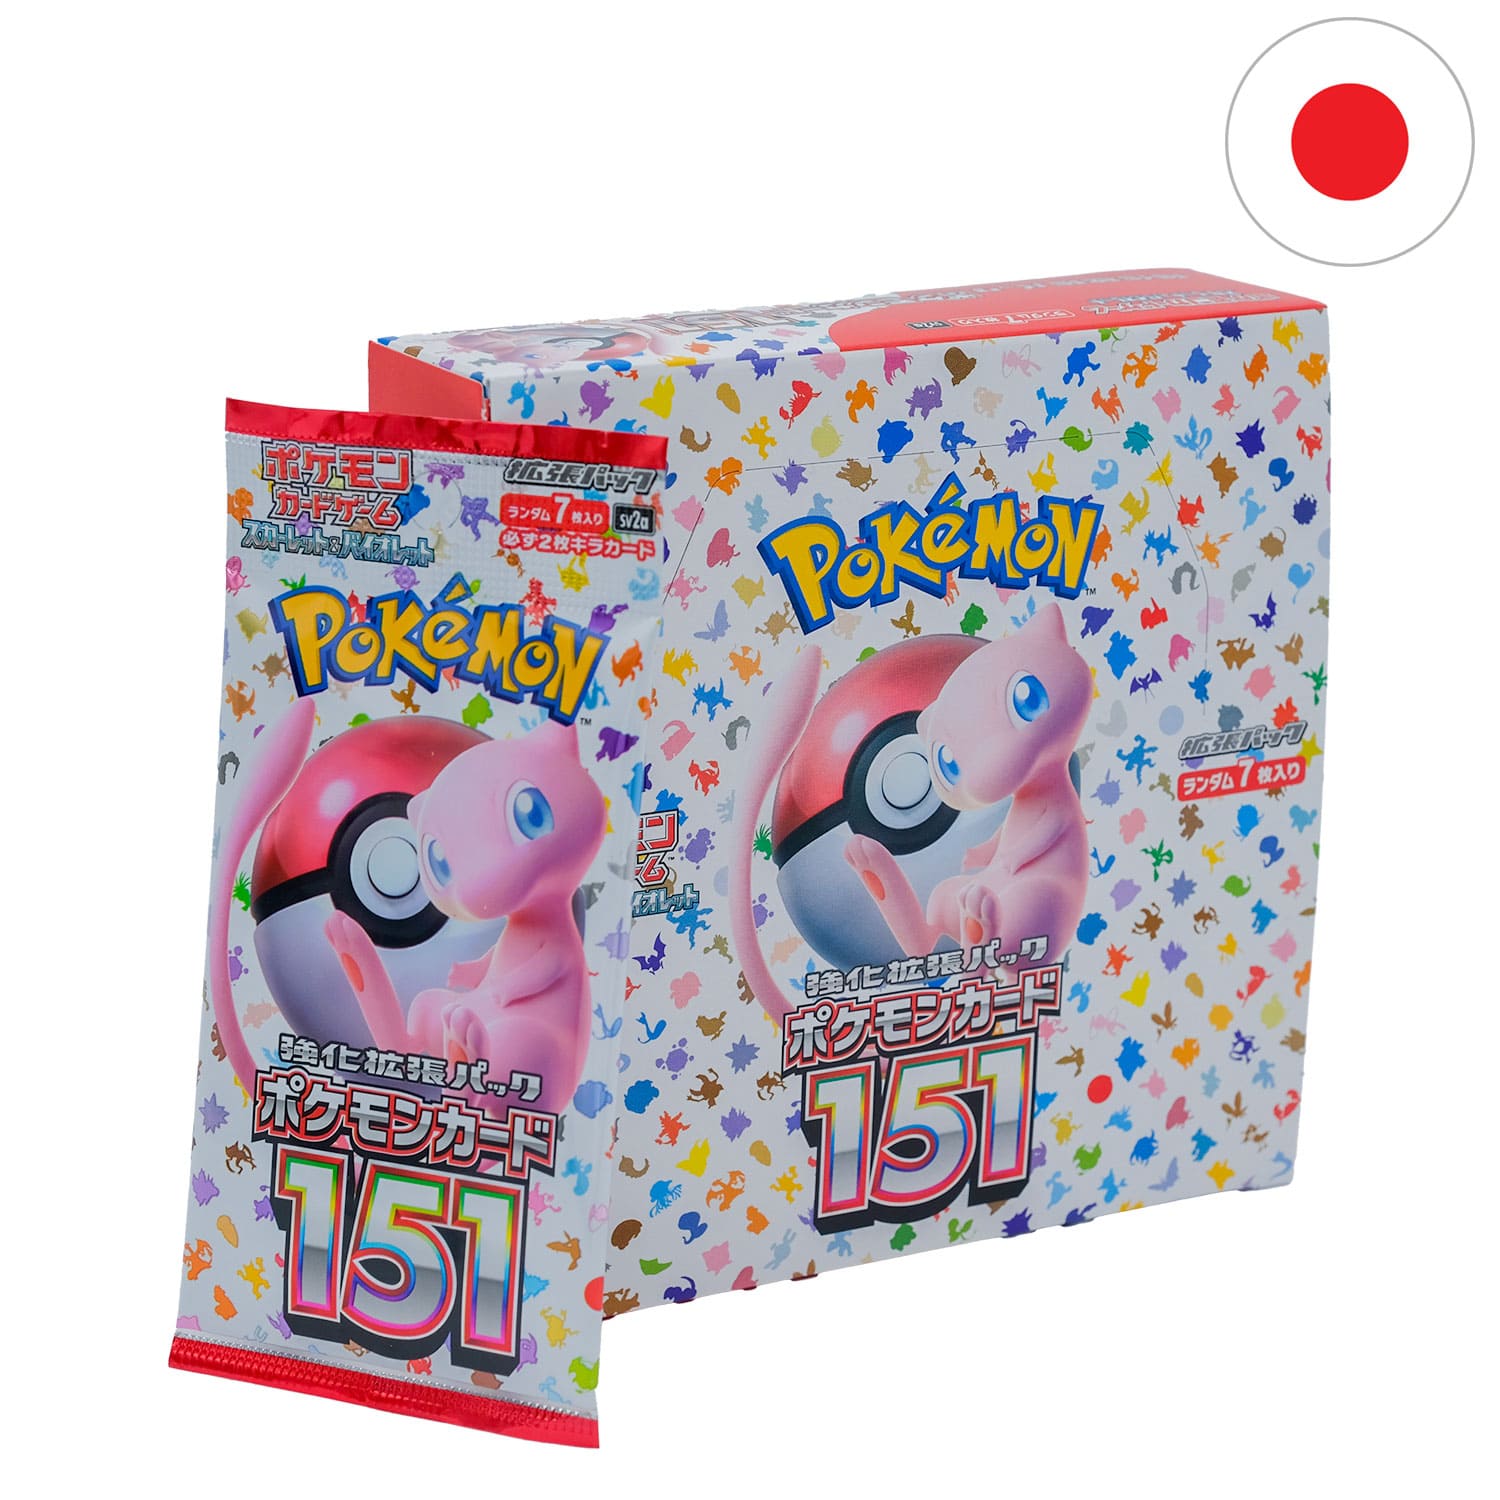 Das japanische Pokemon Display 151 mit Mew auf dem Cover und dem Booster anliegend, mit der Flagge Japans in der Ecke.